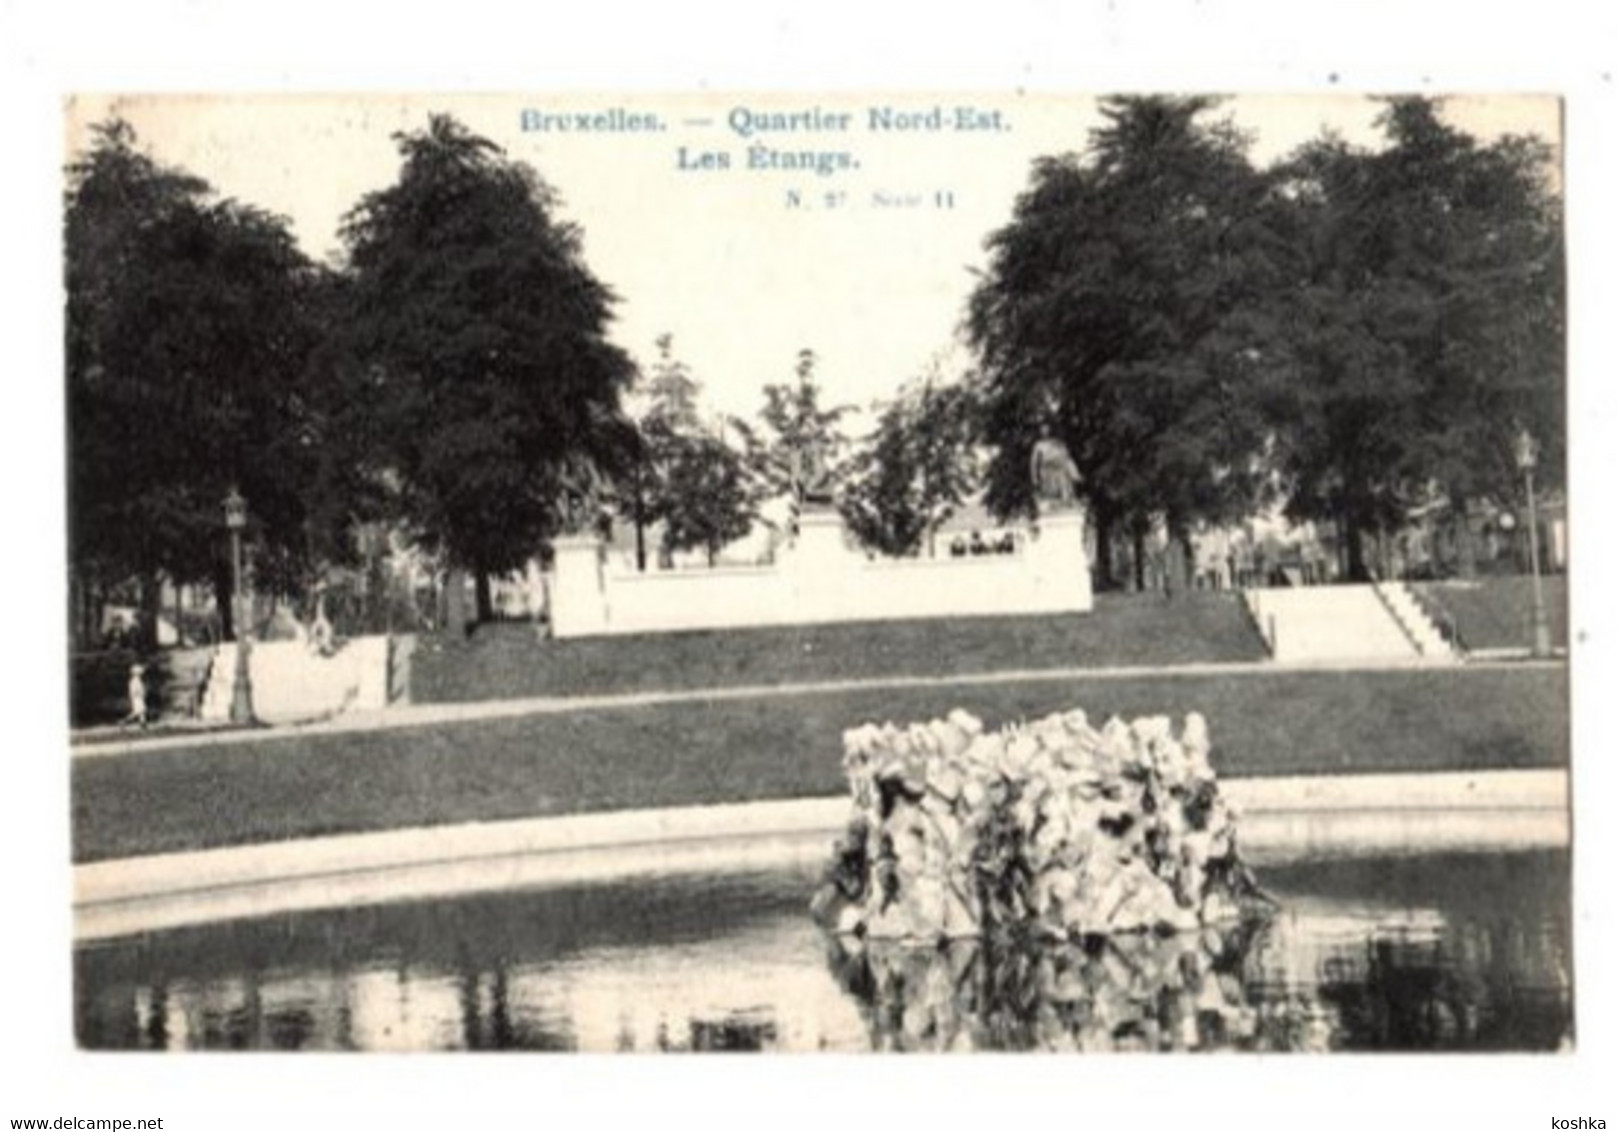 BRUXELLES - Brussel - Quartier Nord Est - Les étangs - 1905 - N 27 Serie 11 - Forêts, Parcs, Jardins